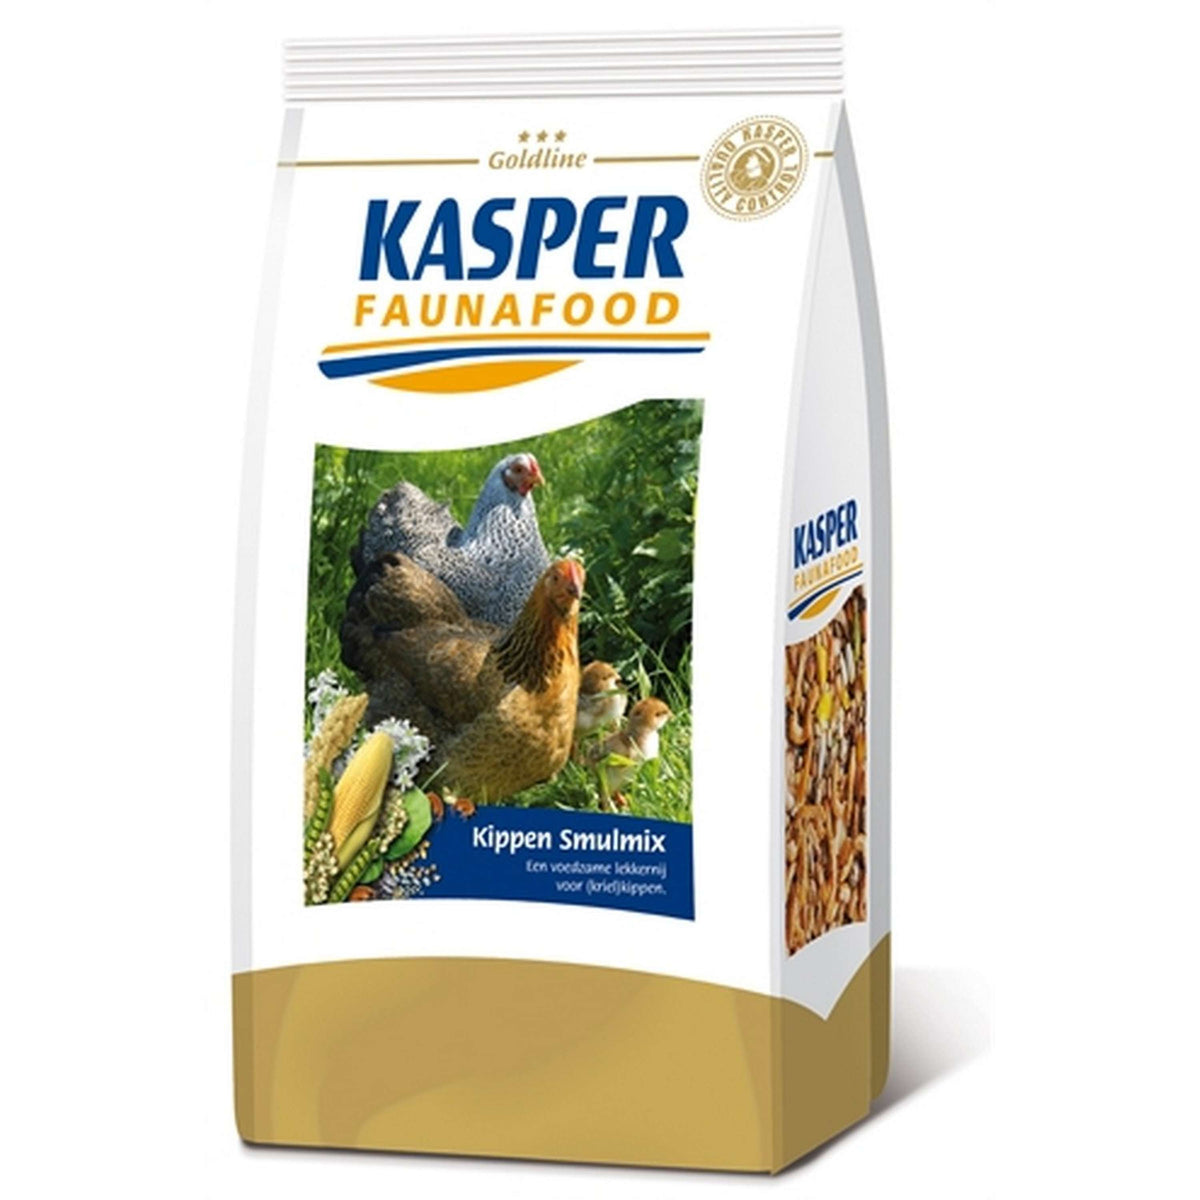 Kasper Fauna Food Smulmix Goldline Hühner